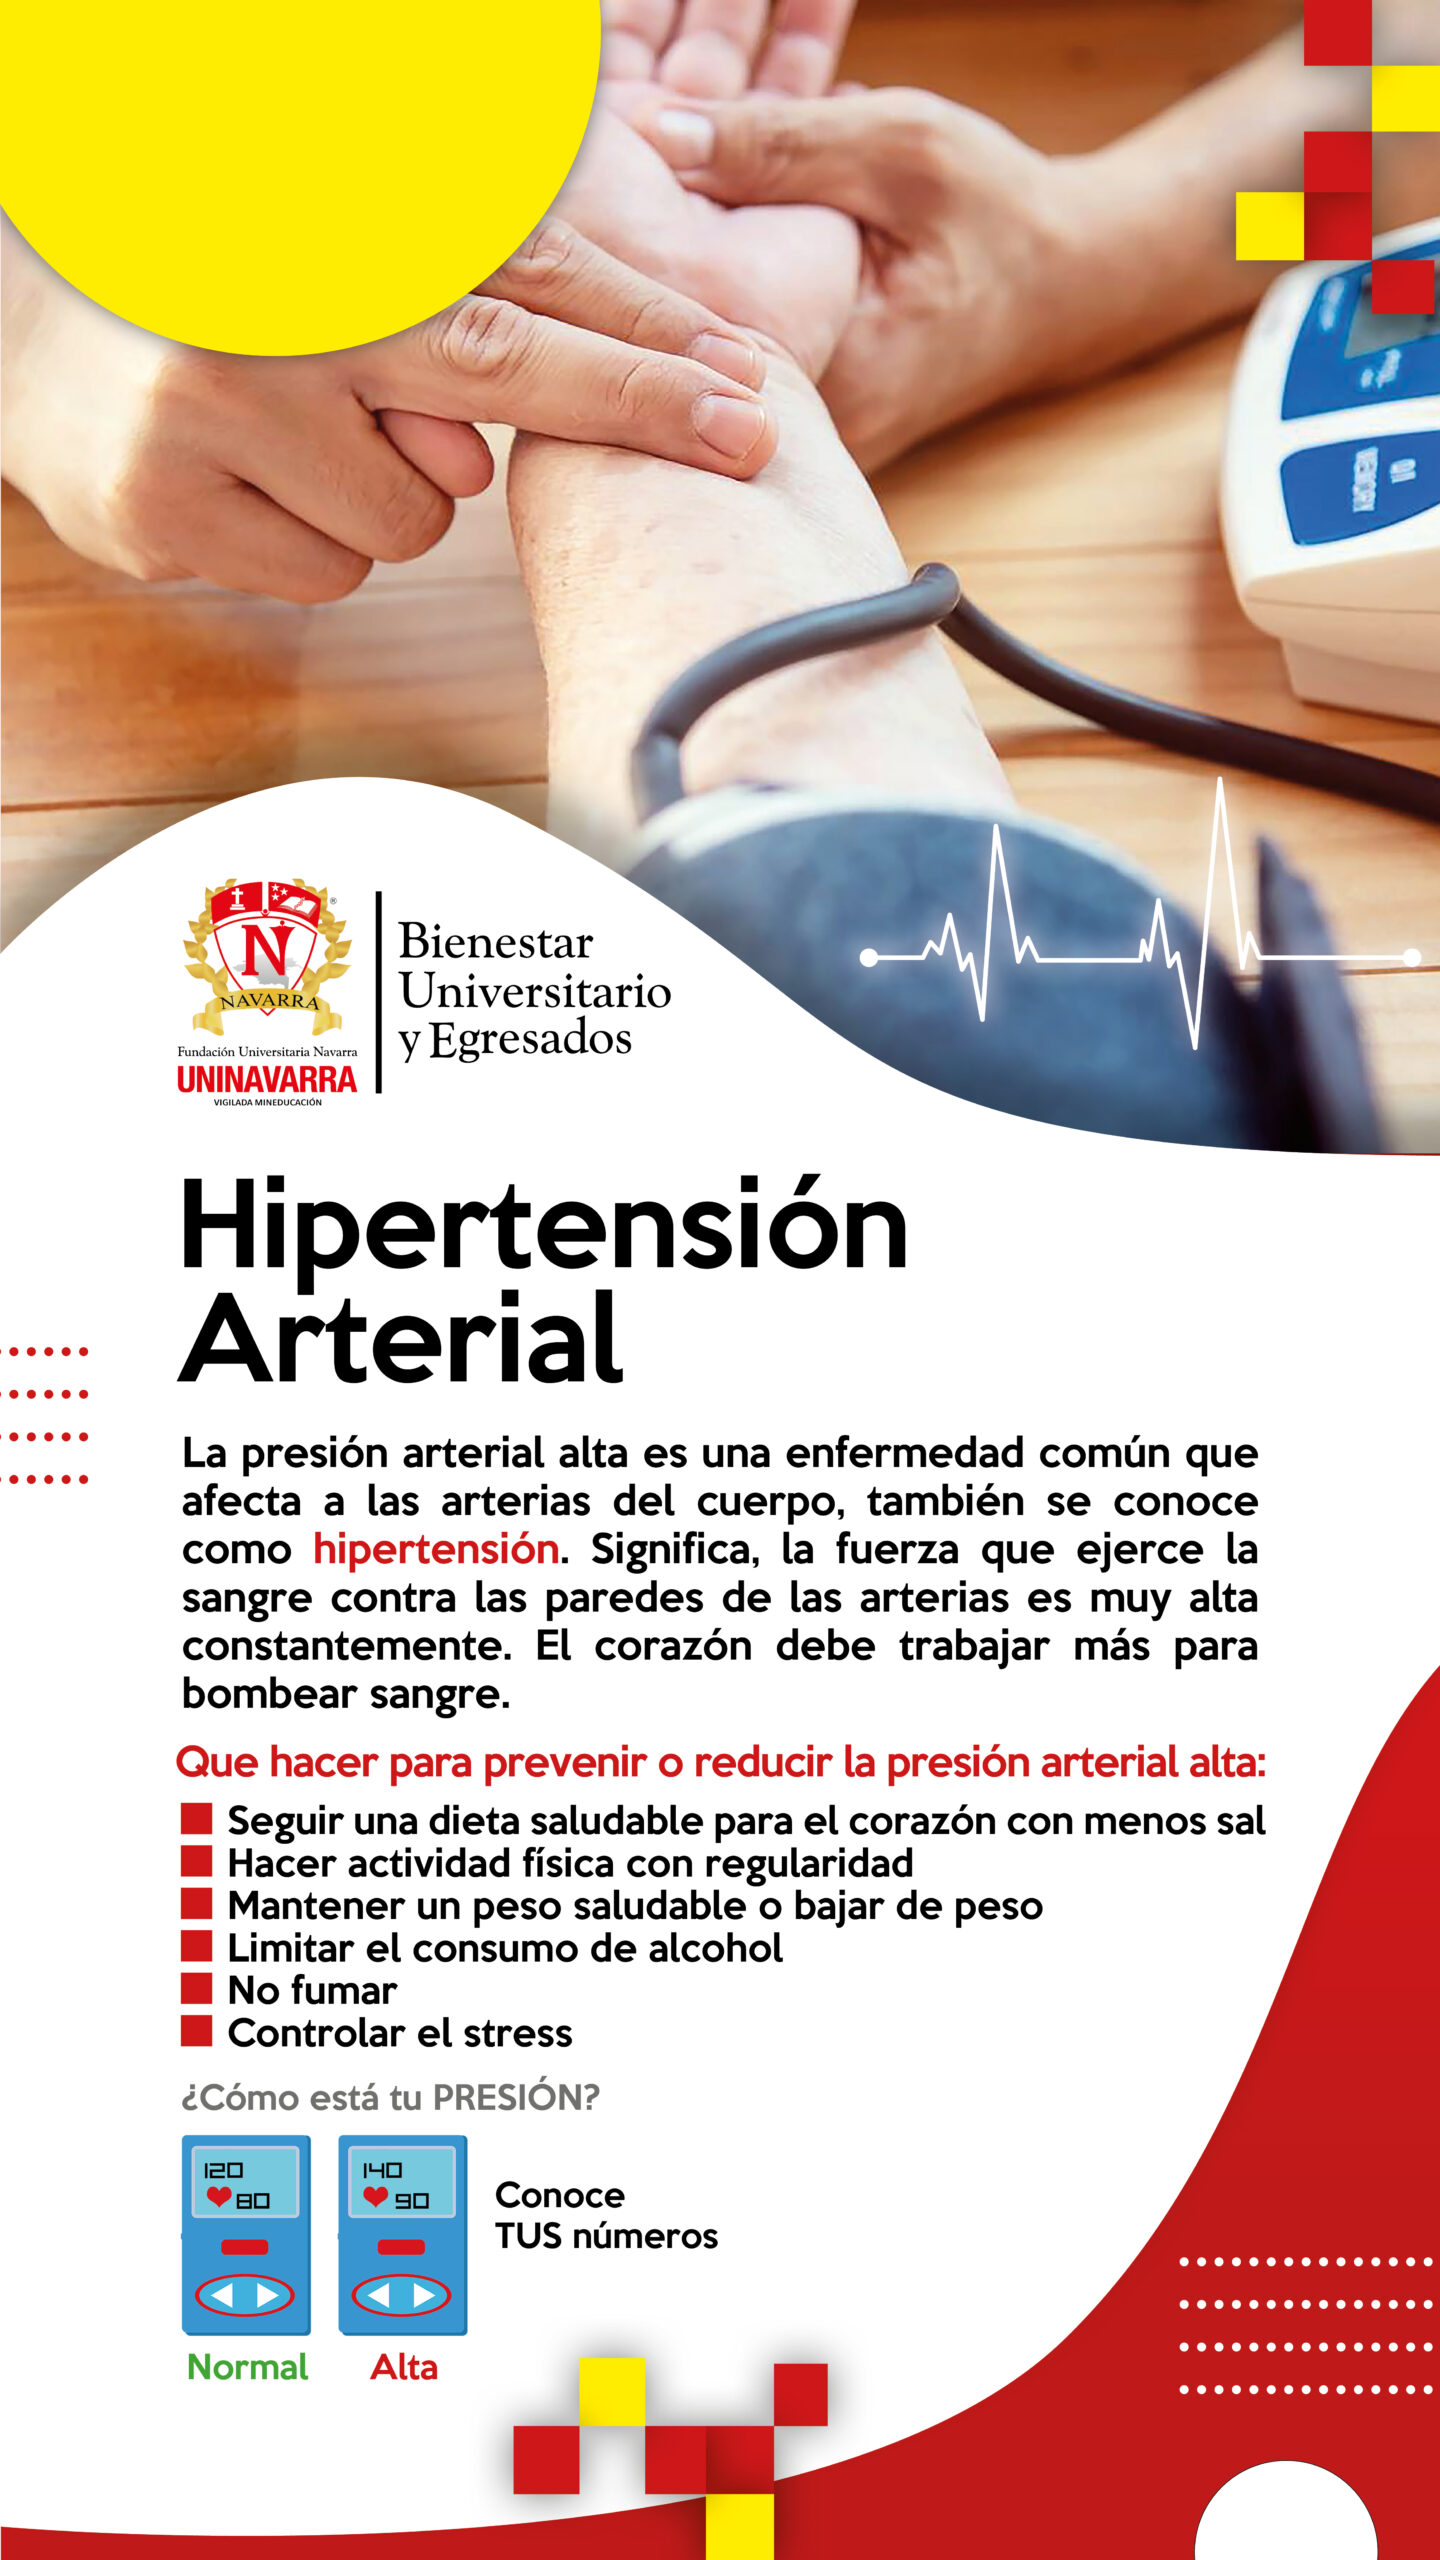 Pildora-hipertencion 2023-1 (1)